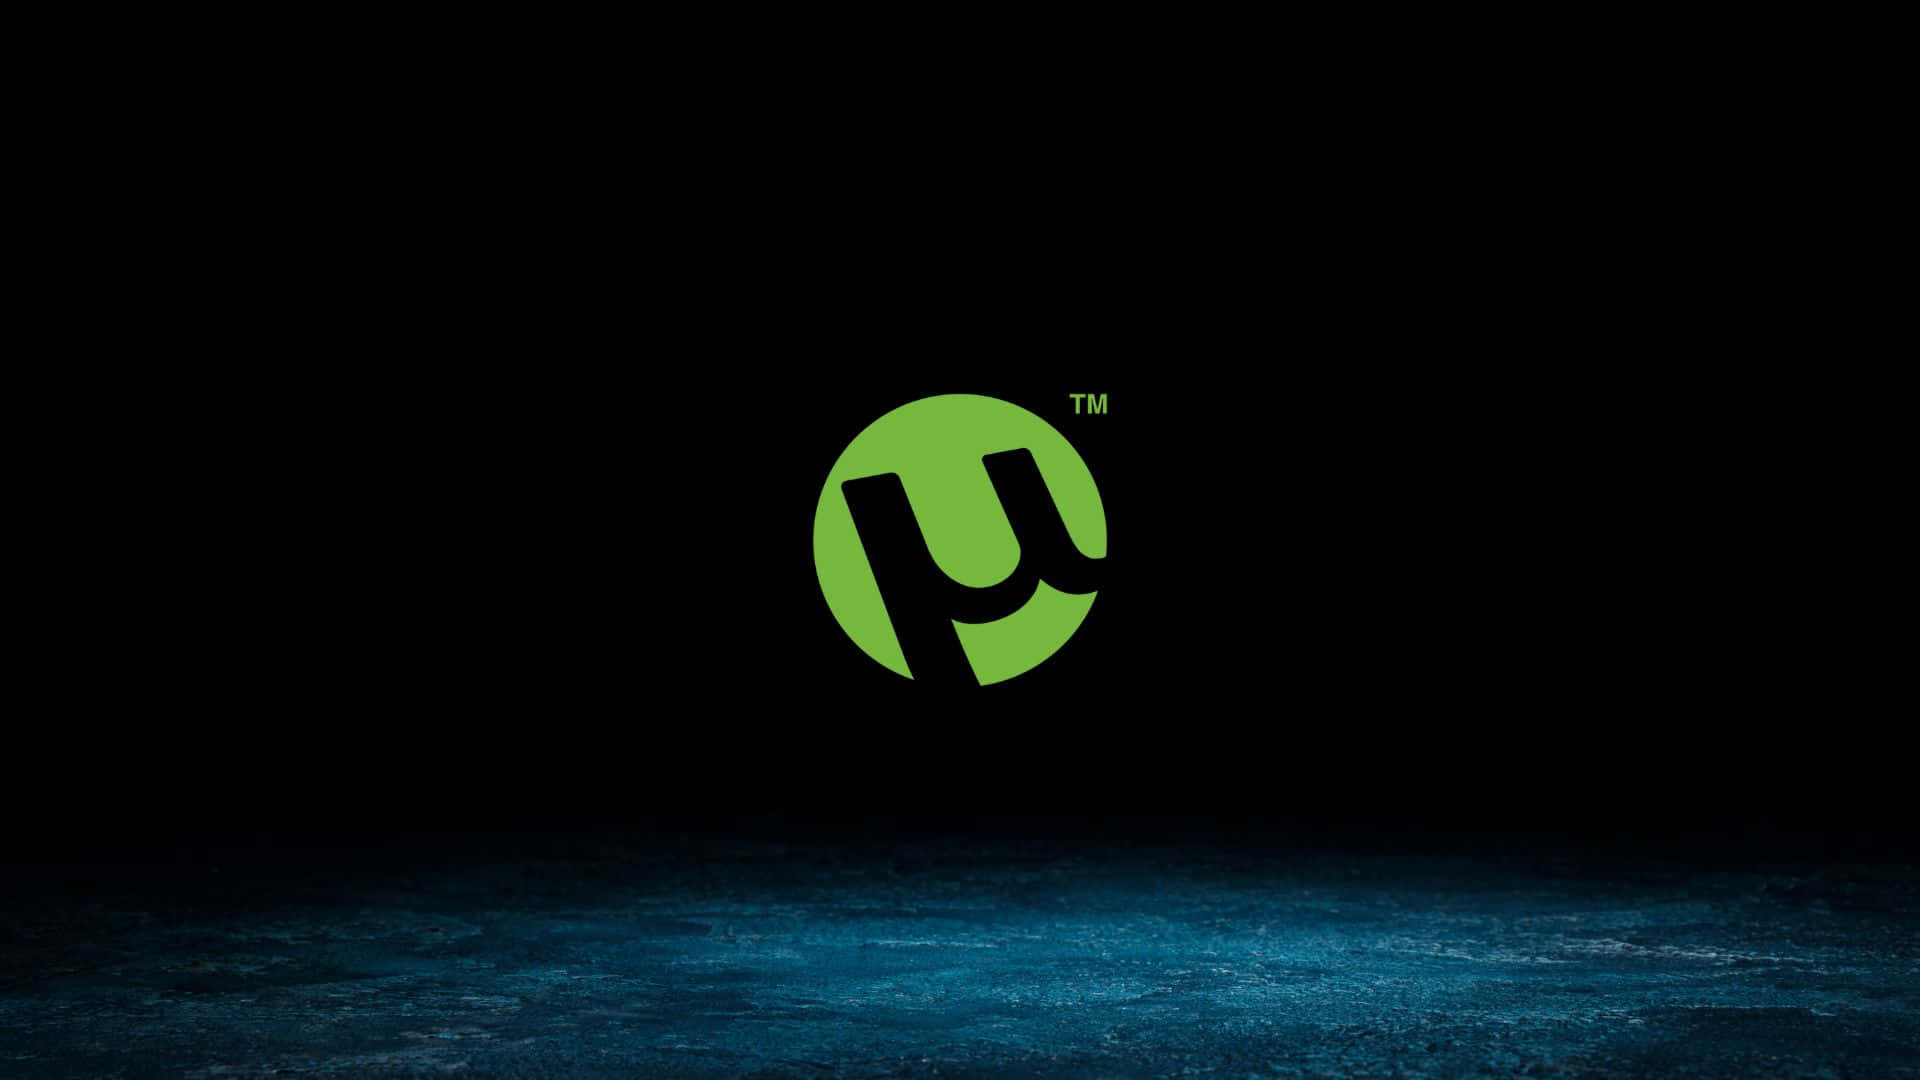 Eingrünes Logo Mit Schwarzem Hintergrund Wallpaper